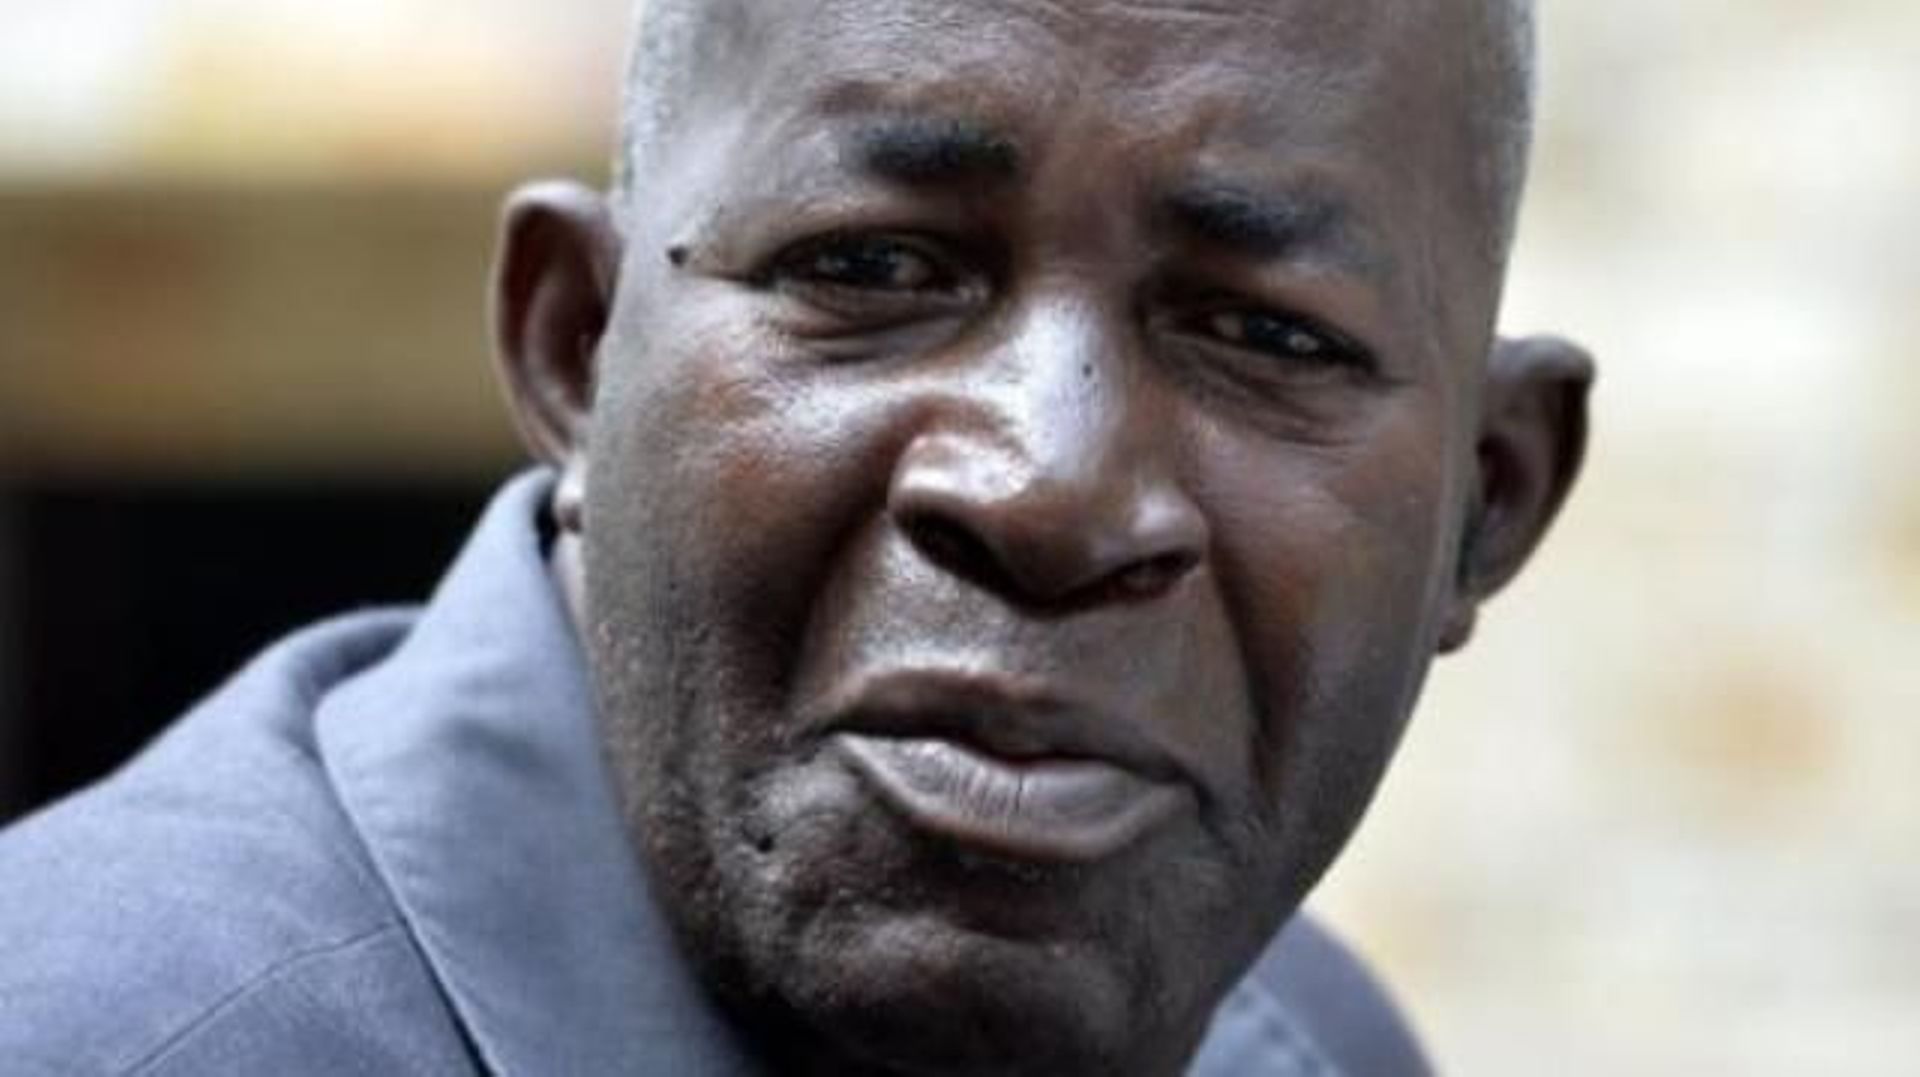 Blessé par balles, le défenseur des droits de l'Homme, Pierre-Claver Mbonimpa, est dans un état stable.